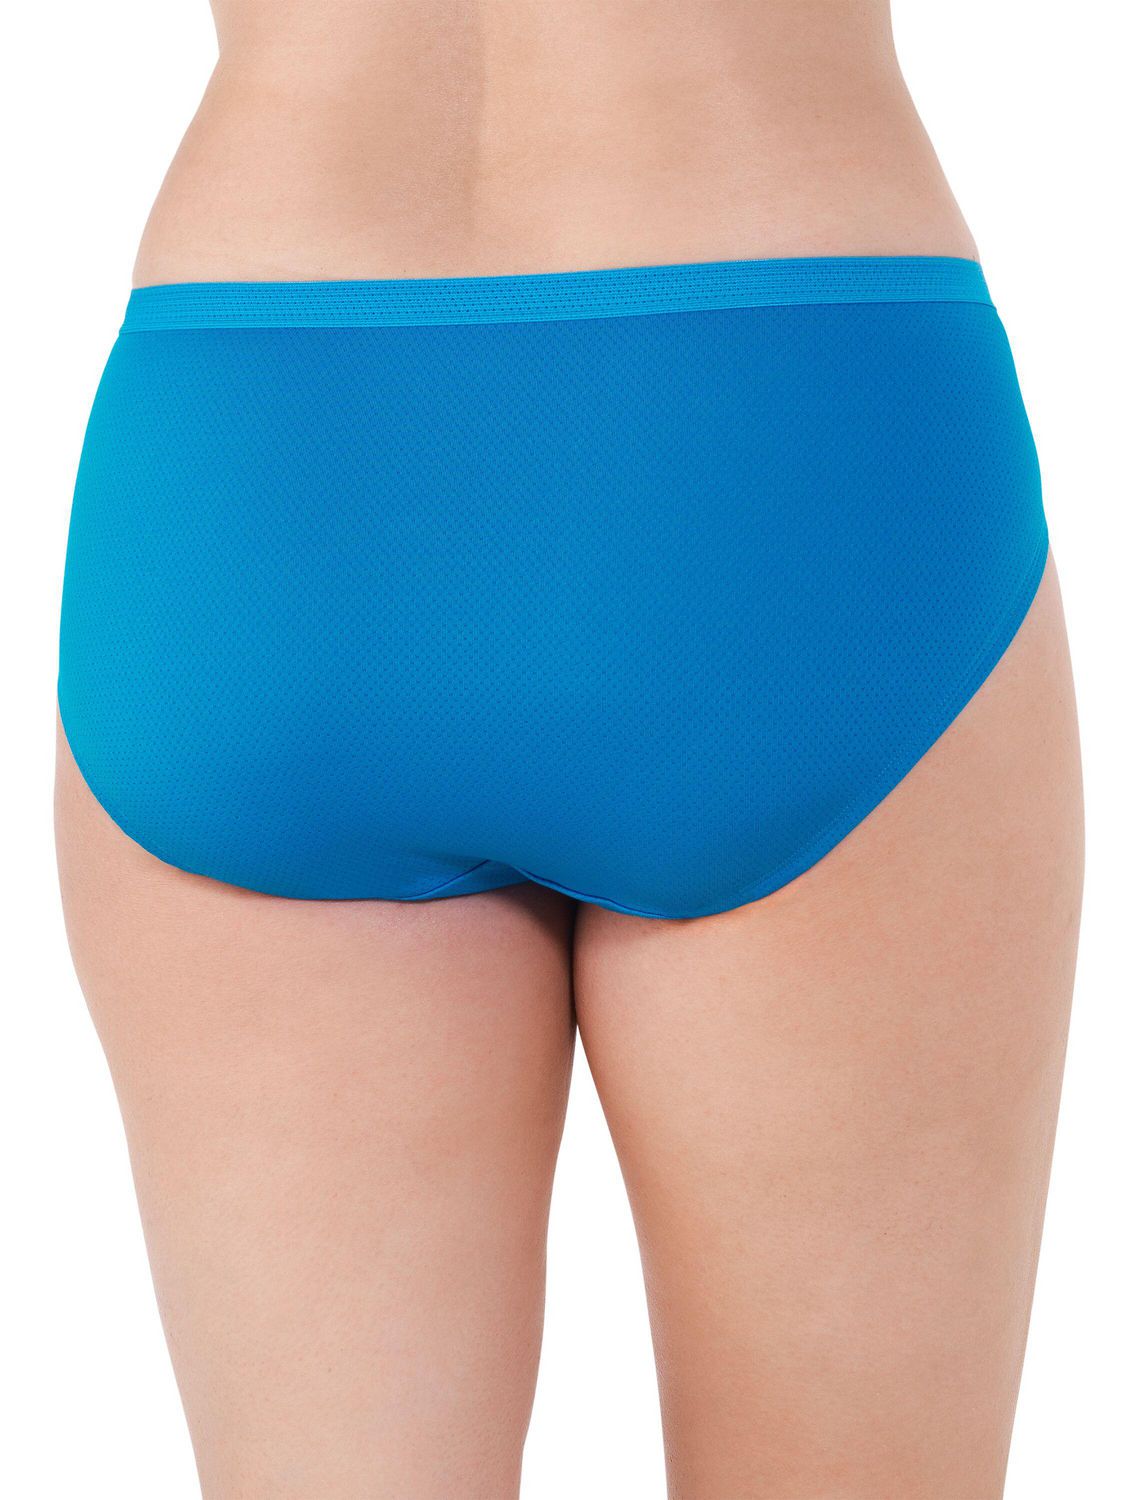 Plus Size Women's Mesh Underpants (5pcs/Pack)